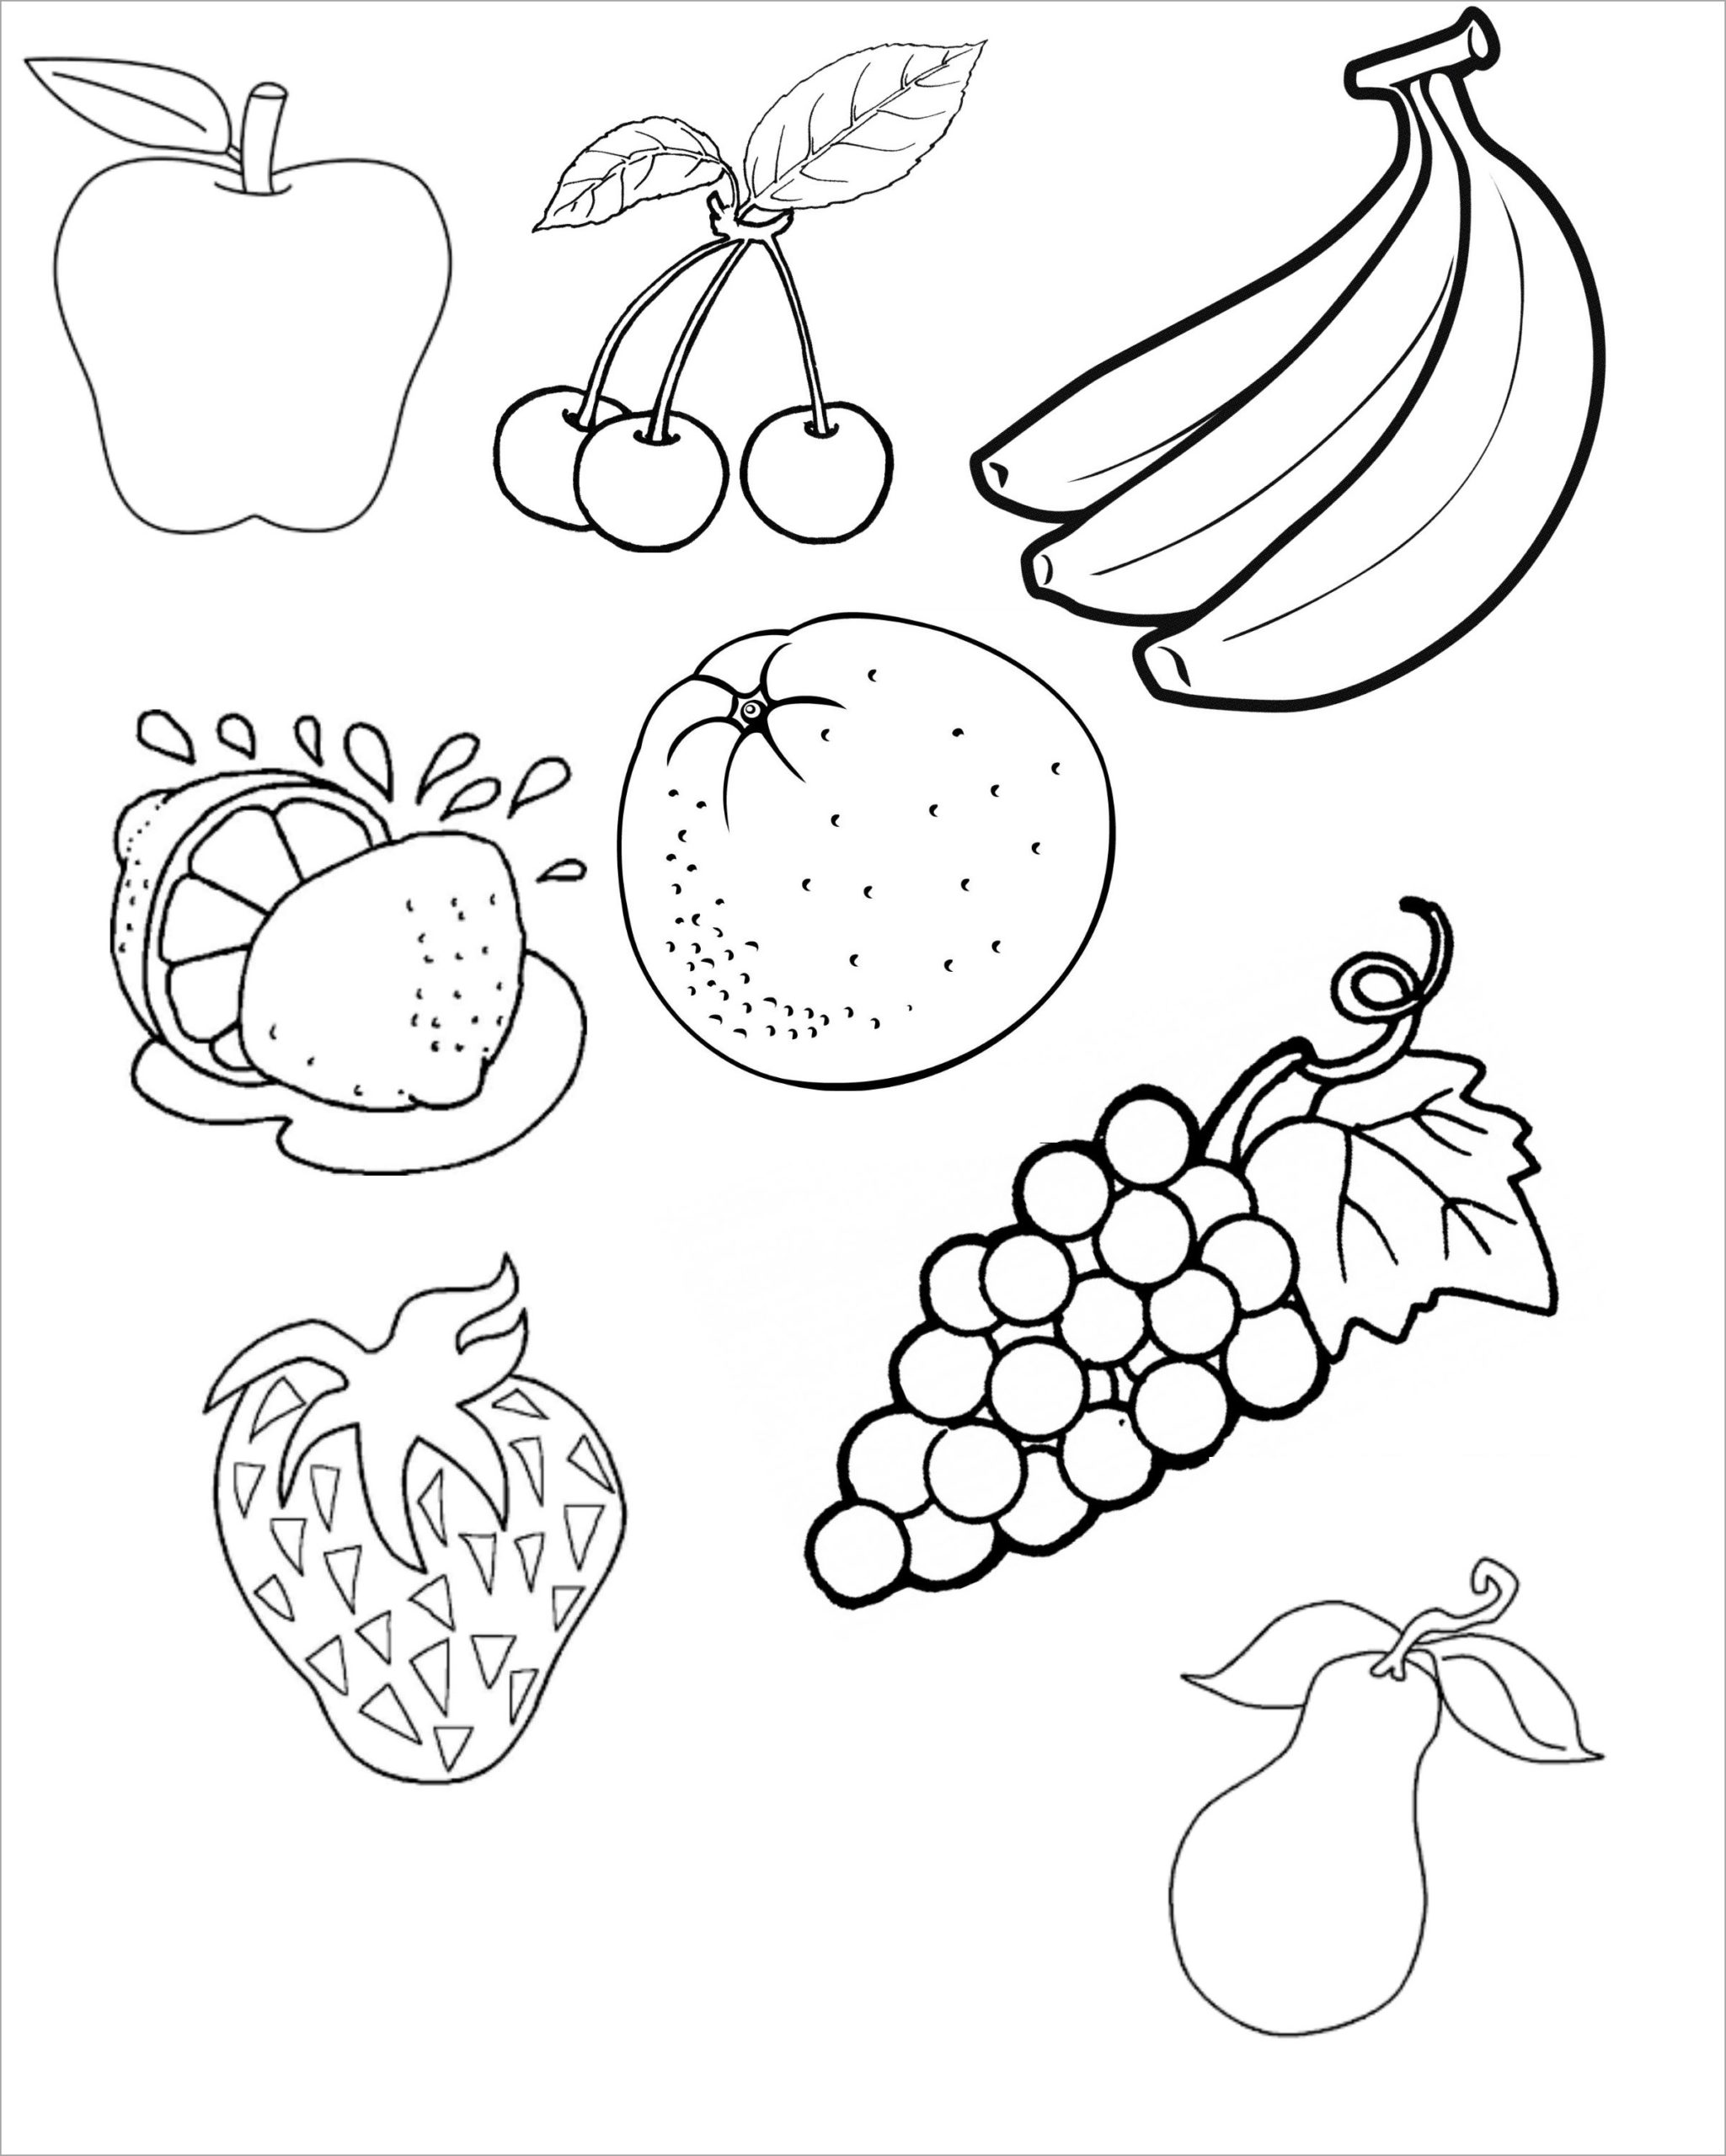 Chi tiết 61 về hình trái cây tô màu hay nhất  trieuson5